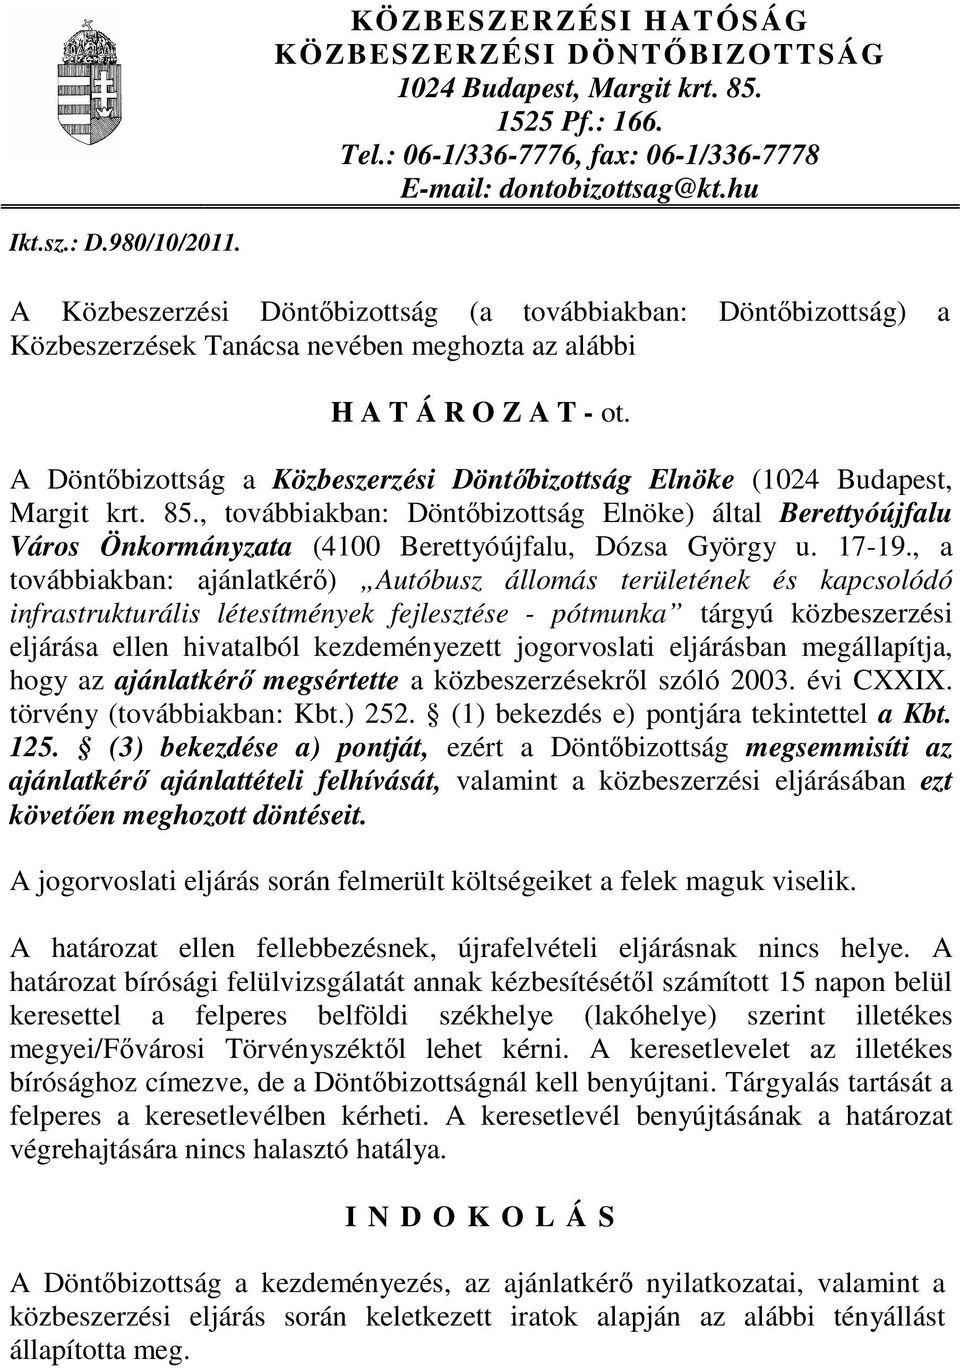 A Döntıbizottság a Közbeszerzési Döntıbizottság Elnöke (1024 Budapest, Margit krt. 85.